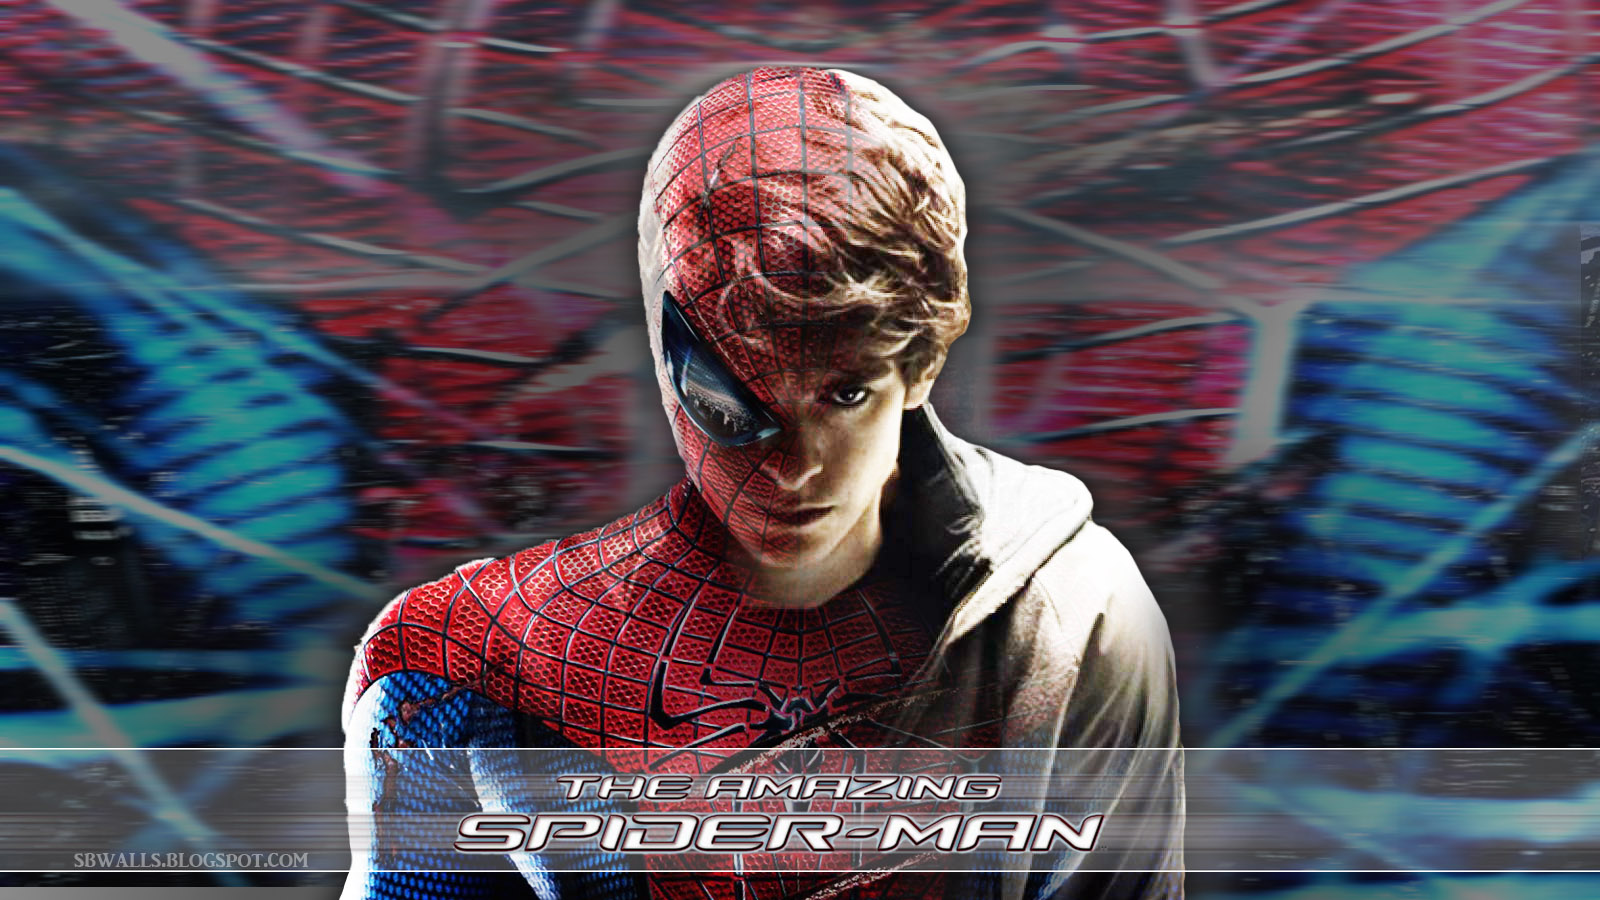 Amazing Spiderman Movie wallpaper   Spider Man Wallpaper 31480807